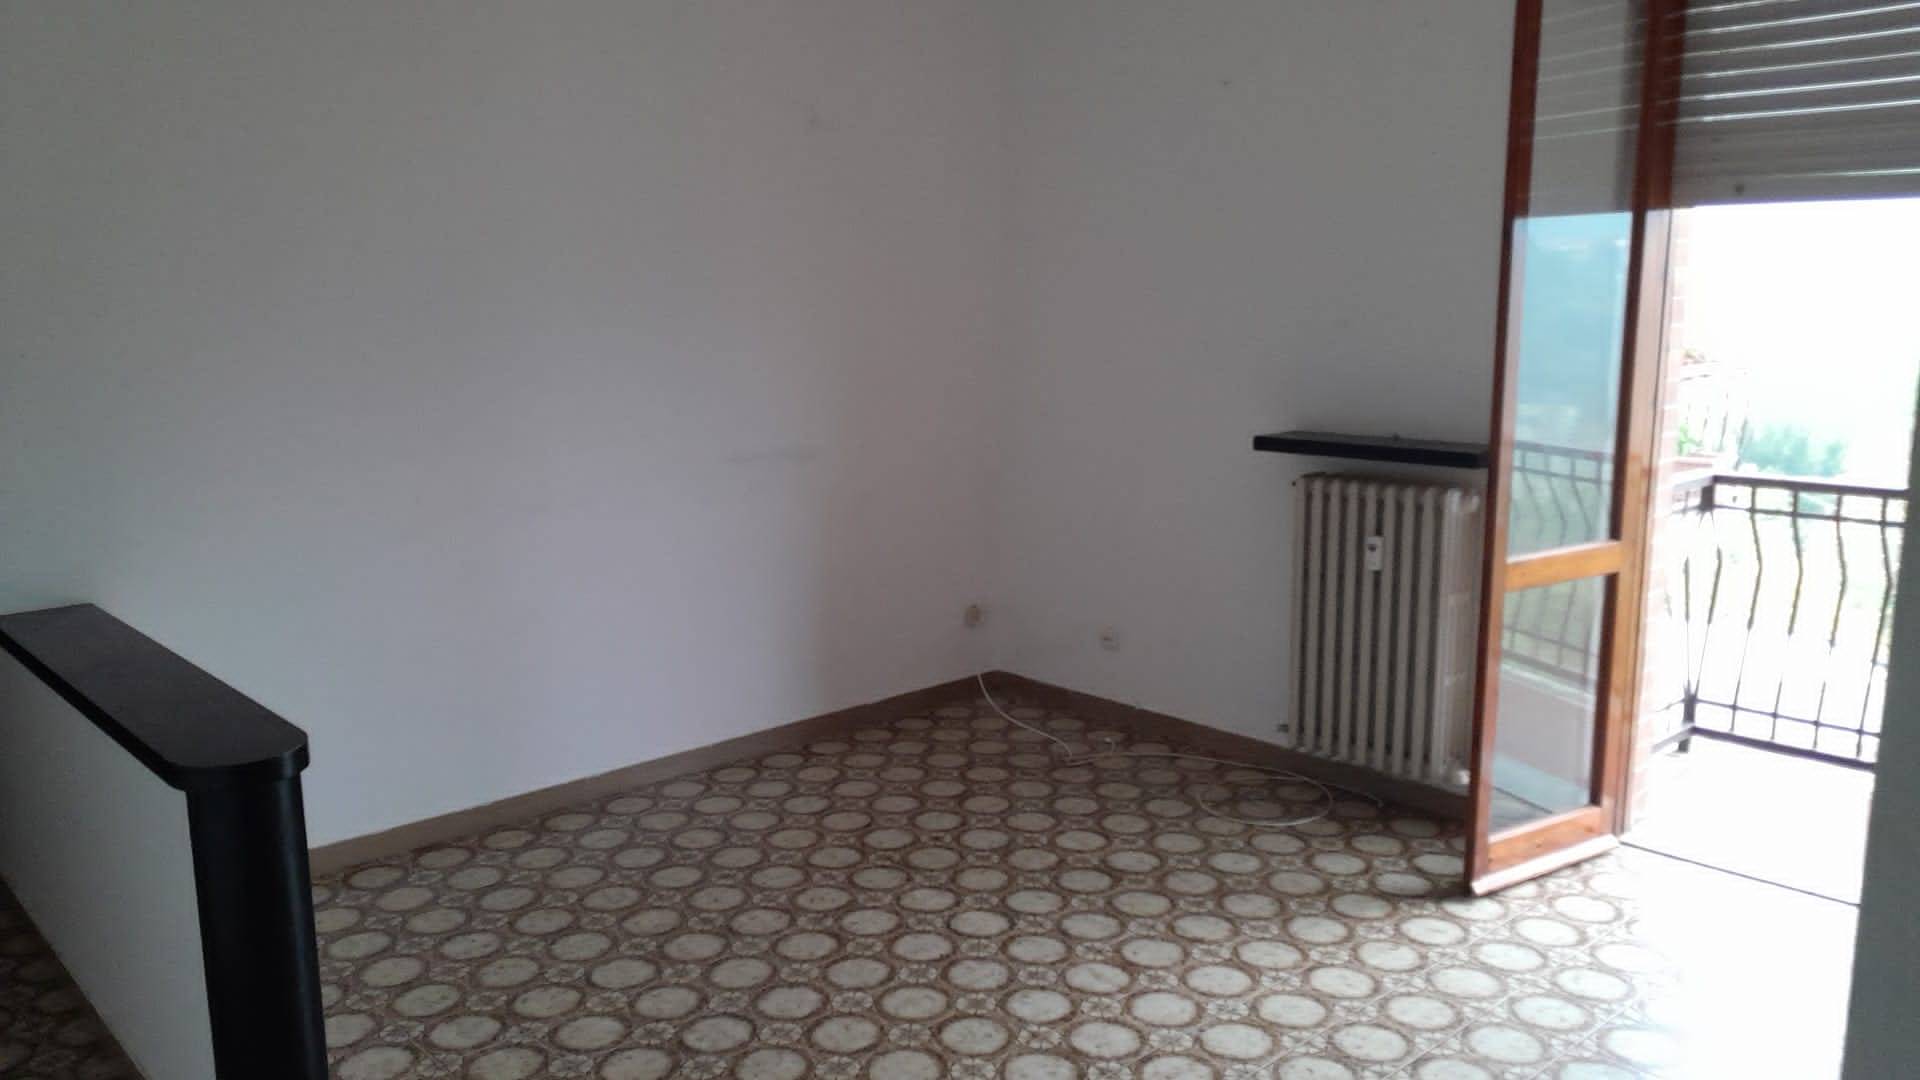 Appartamento in vendita a Terzo, 4 locali, prezzo € 37.000 | PortaleAgenzieImmobiliari.it